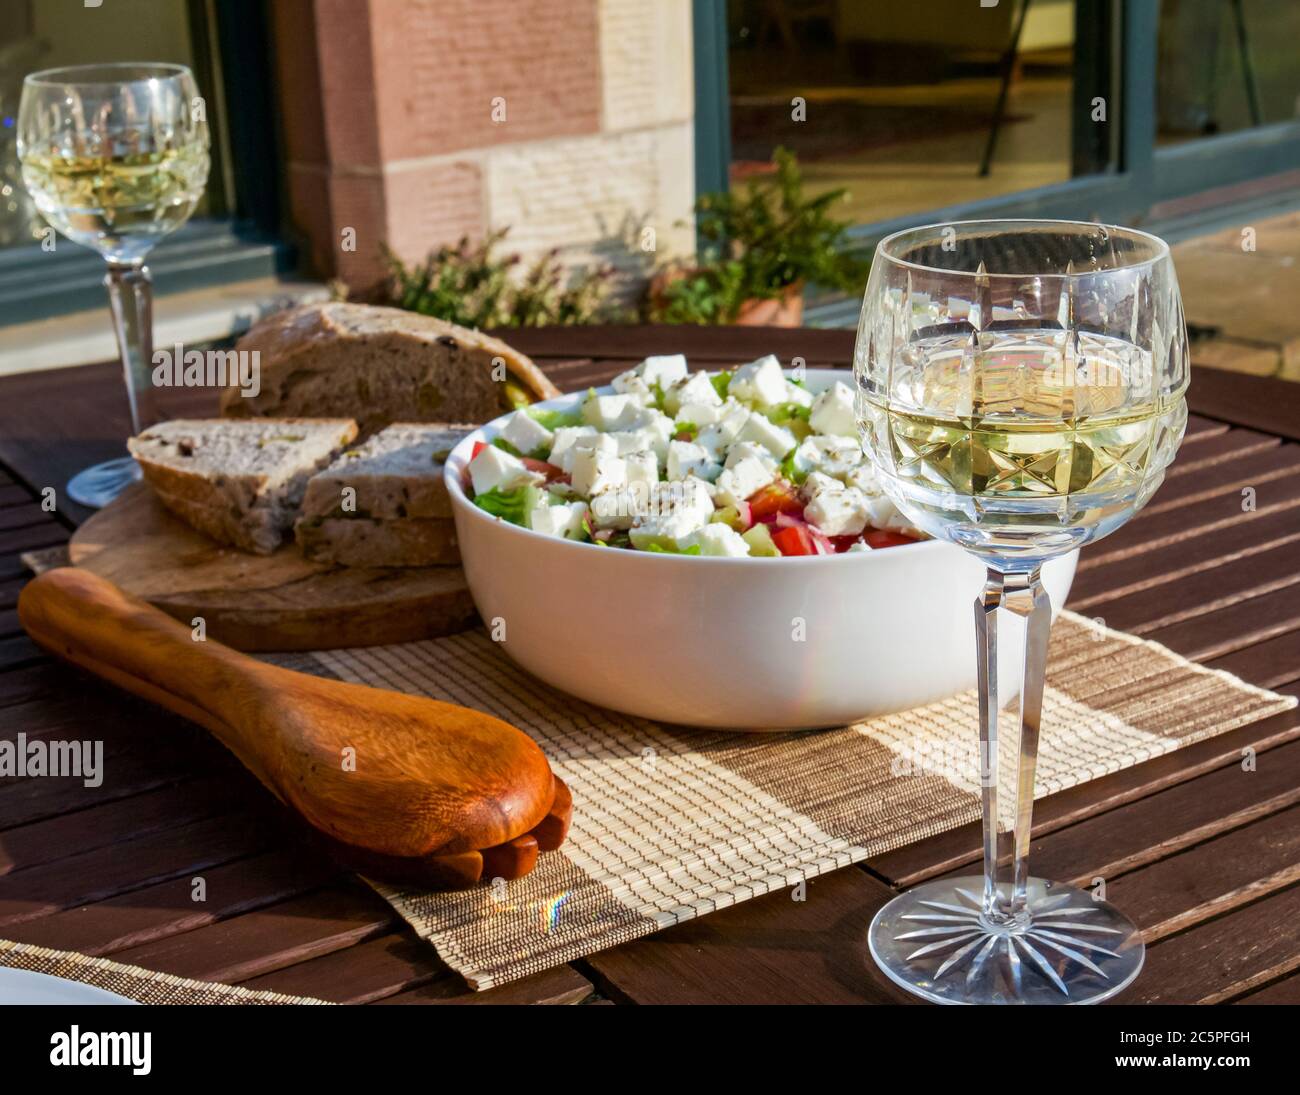 Repas d'été extérieur avec bol à salade feta, cuillères de service, pain frais et vin blanc dans des verres en cristal, Écosse, Royaume-Uni Banque D'Images